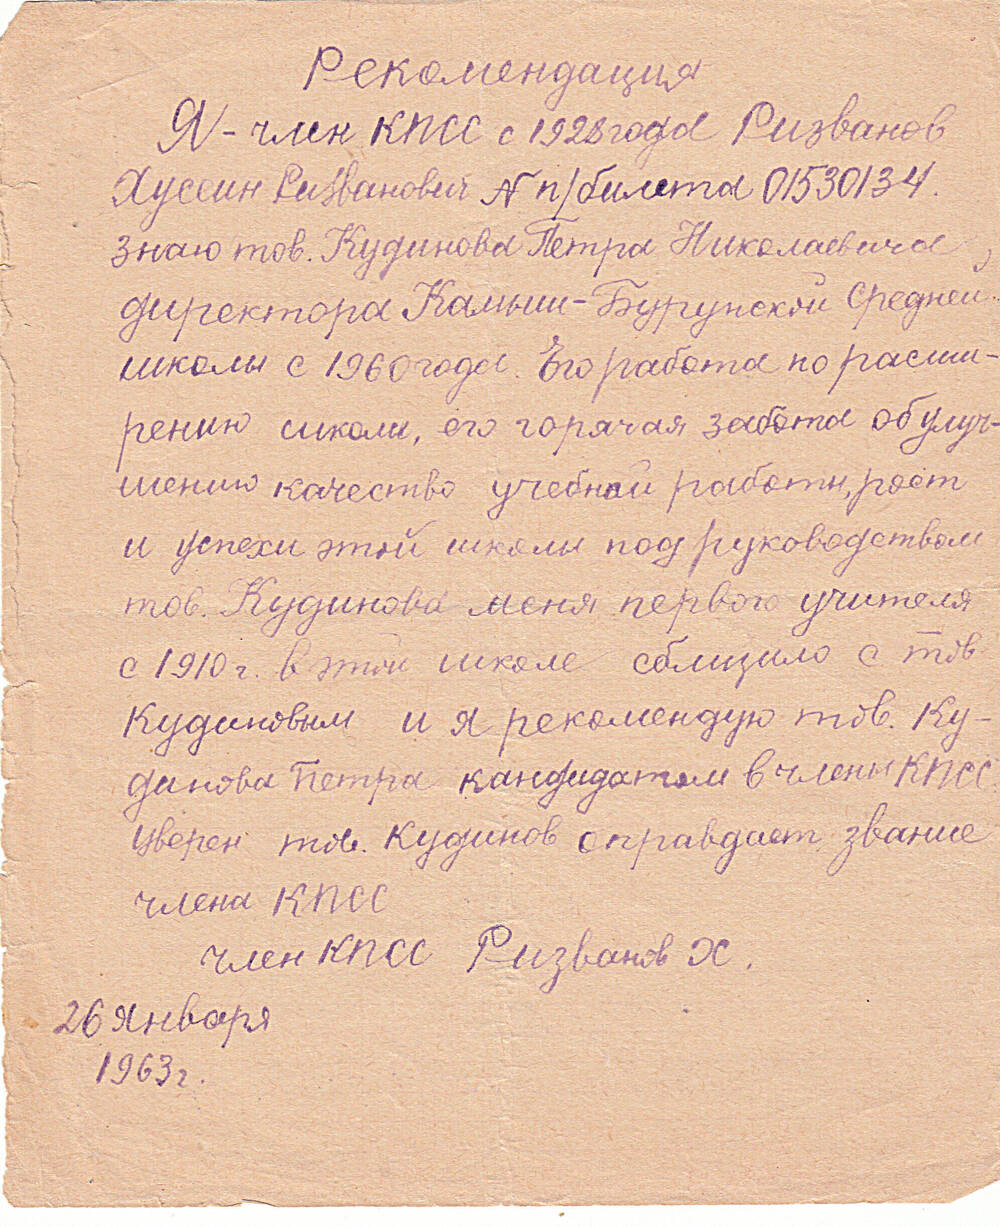 Рекомендация  рукописная. Ризванов Хусейн Ризванович, рекомендует Кудинова Петра Николаевича кандидатом в члены КПСС.